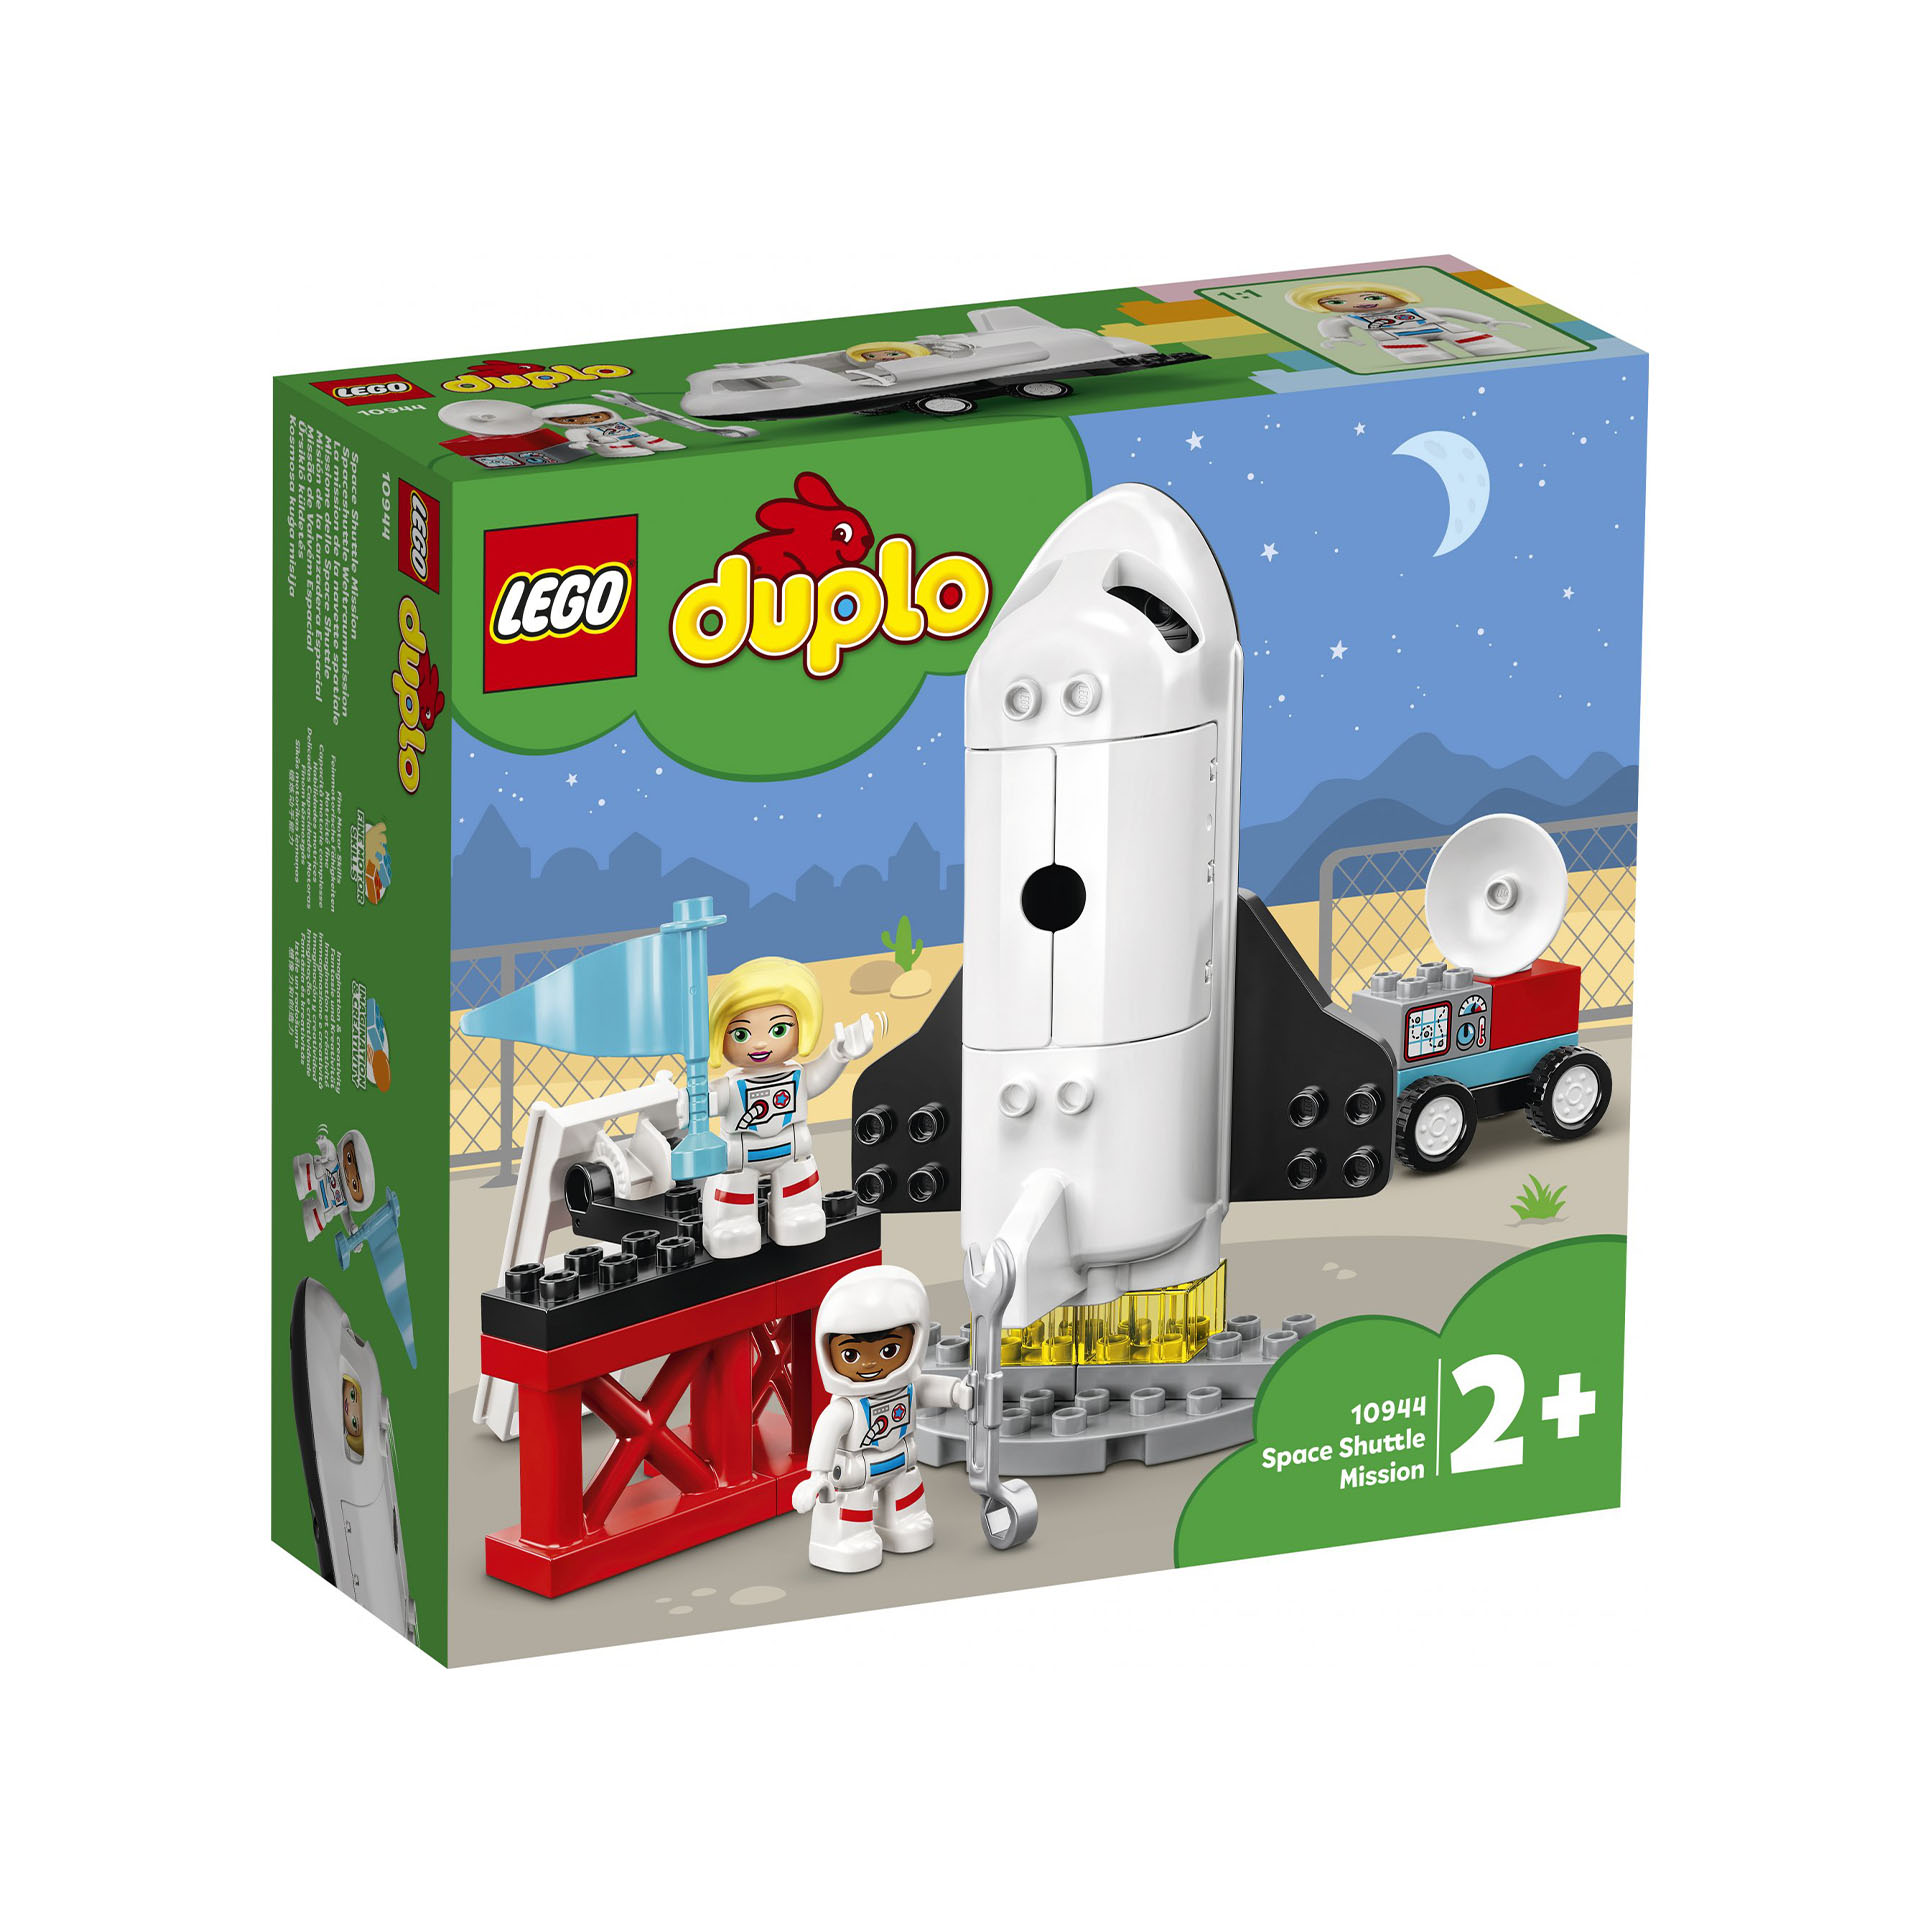 LEGO DUPLO Town Missione dello Space Shuttle, Set da Costruzione per Bambini 2 a 10944, , large